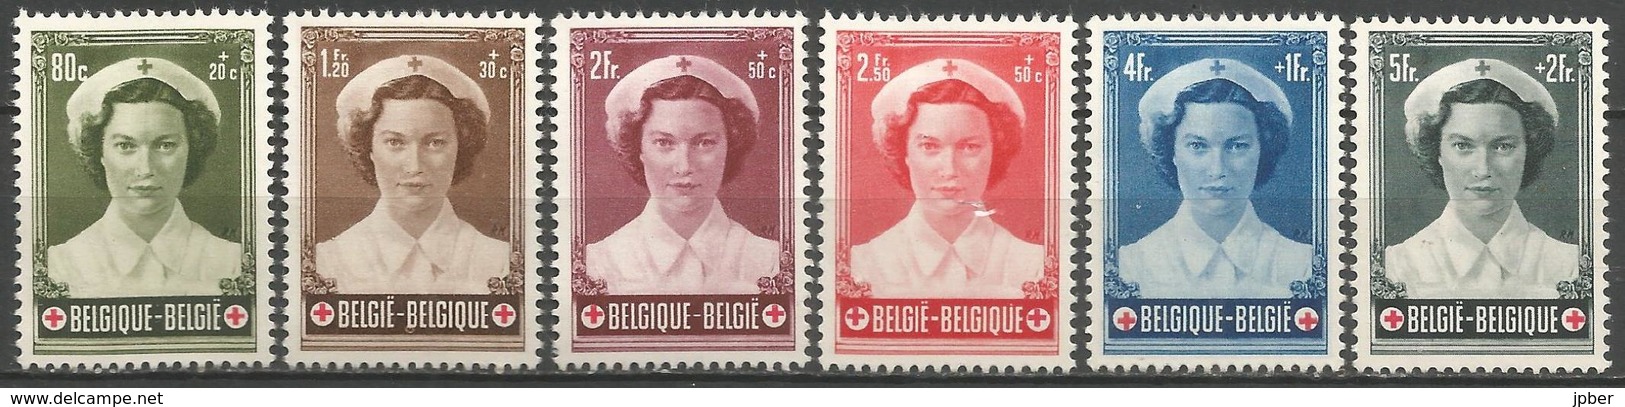 (E058) BELGIQUE - N°912à917 * - Croix-Rouge - Princesse Joséphine -Charlotte - Nuovi